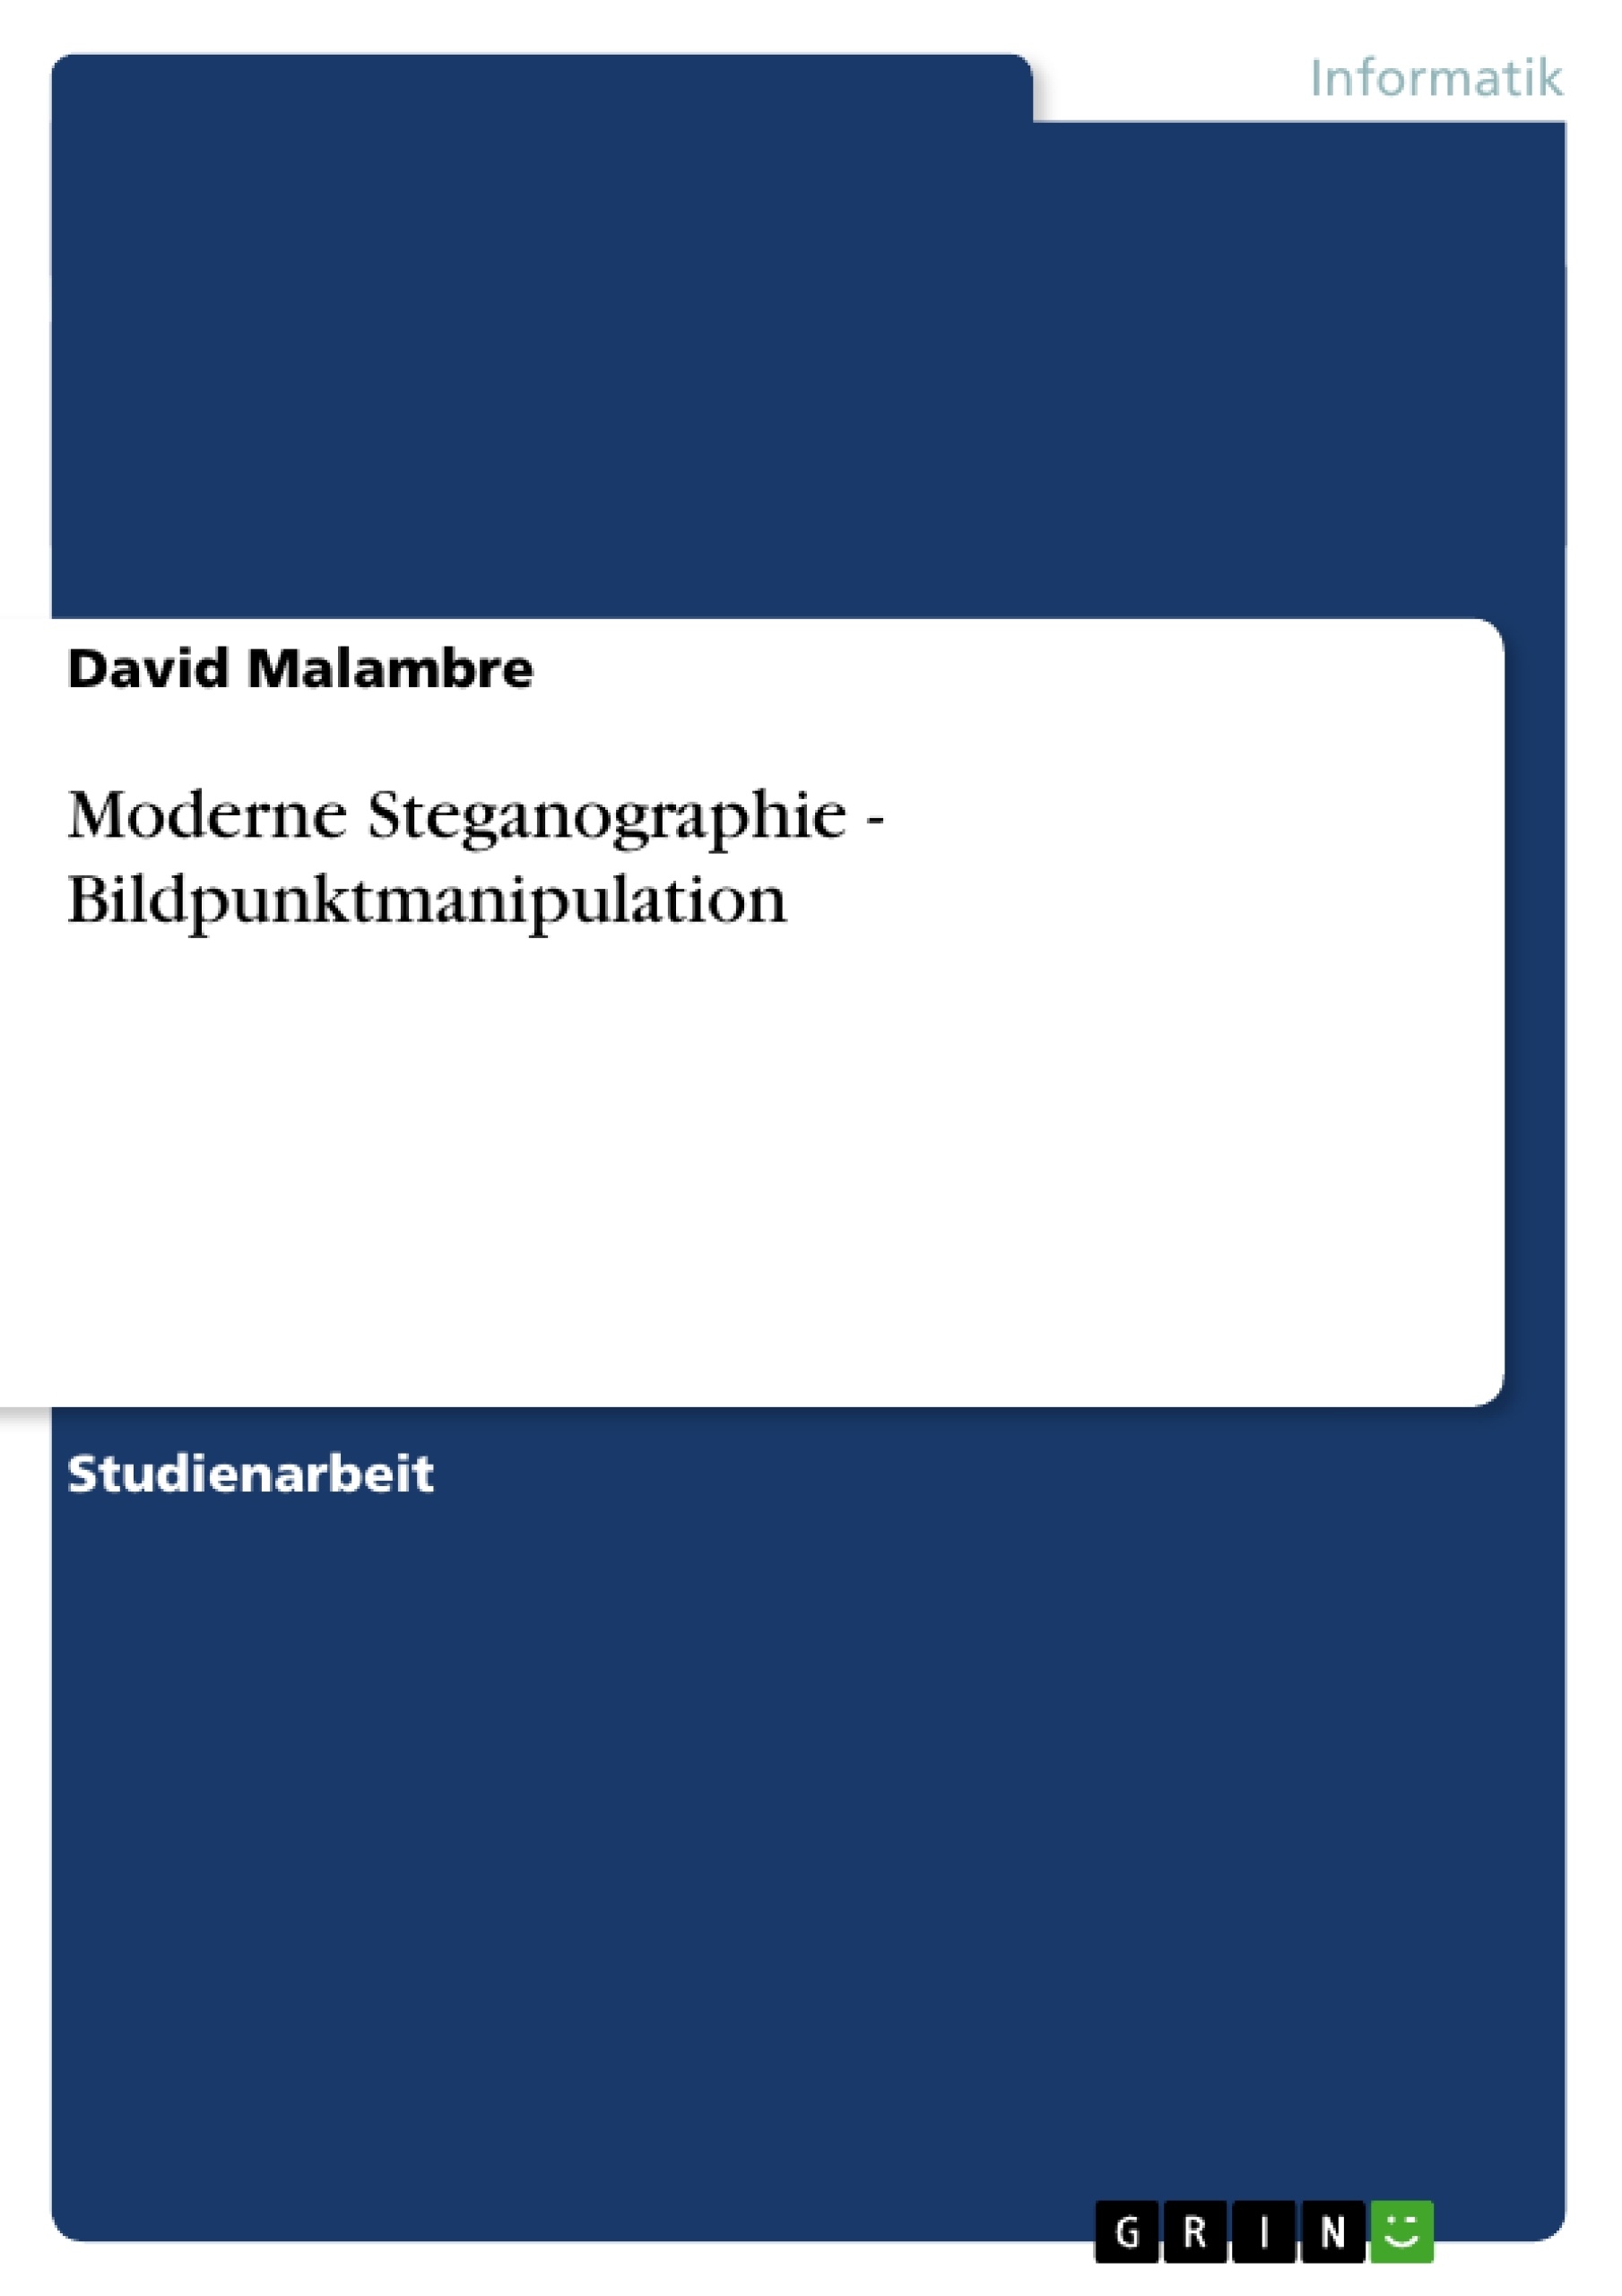 Title: Moderne Steganographie - Bildpunktmanipulation